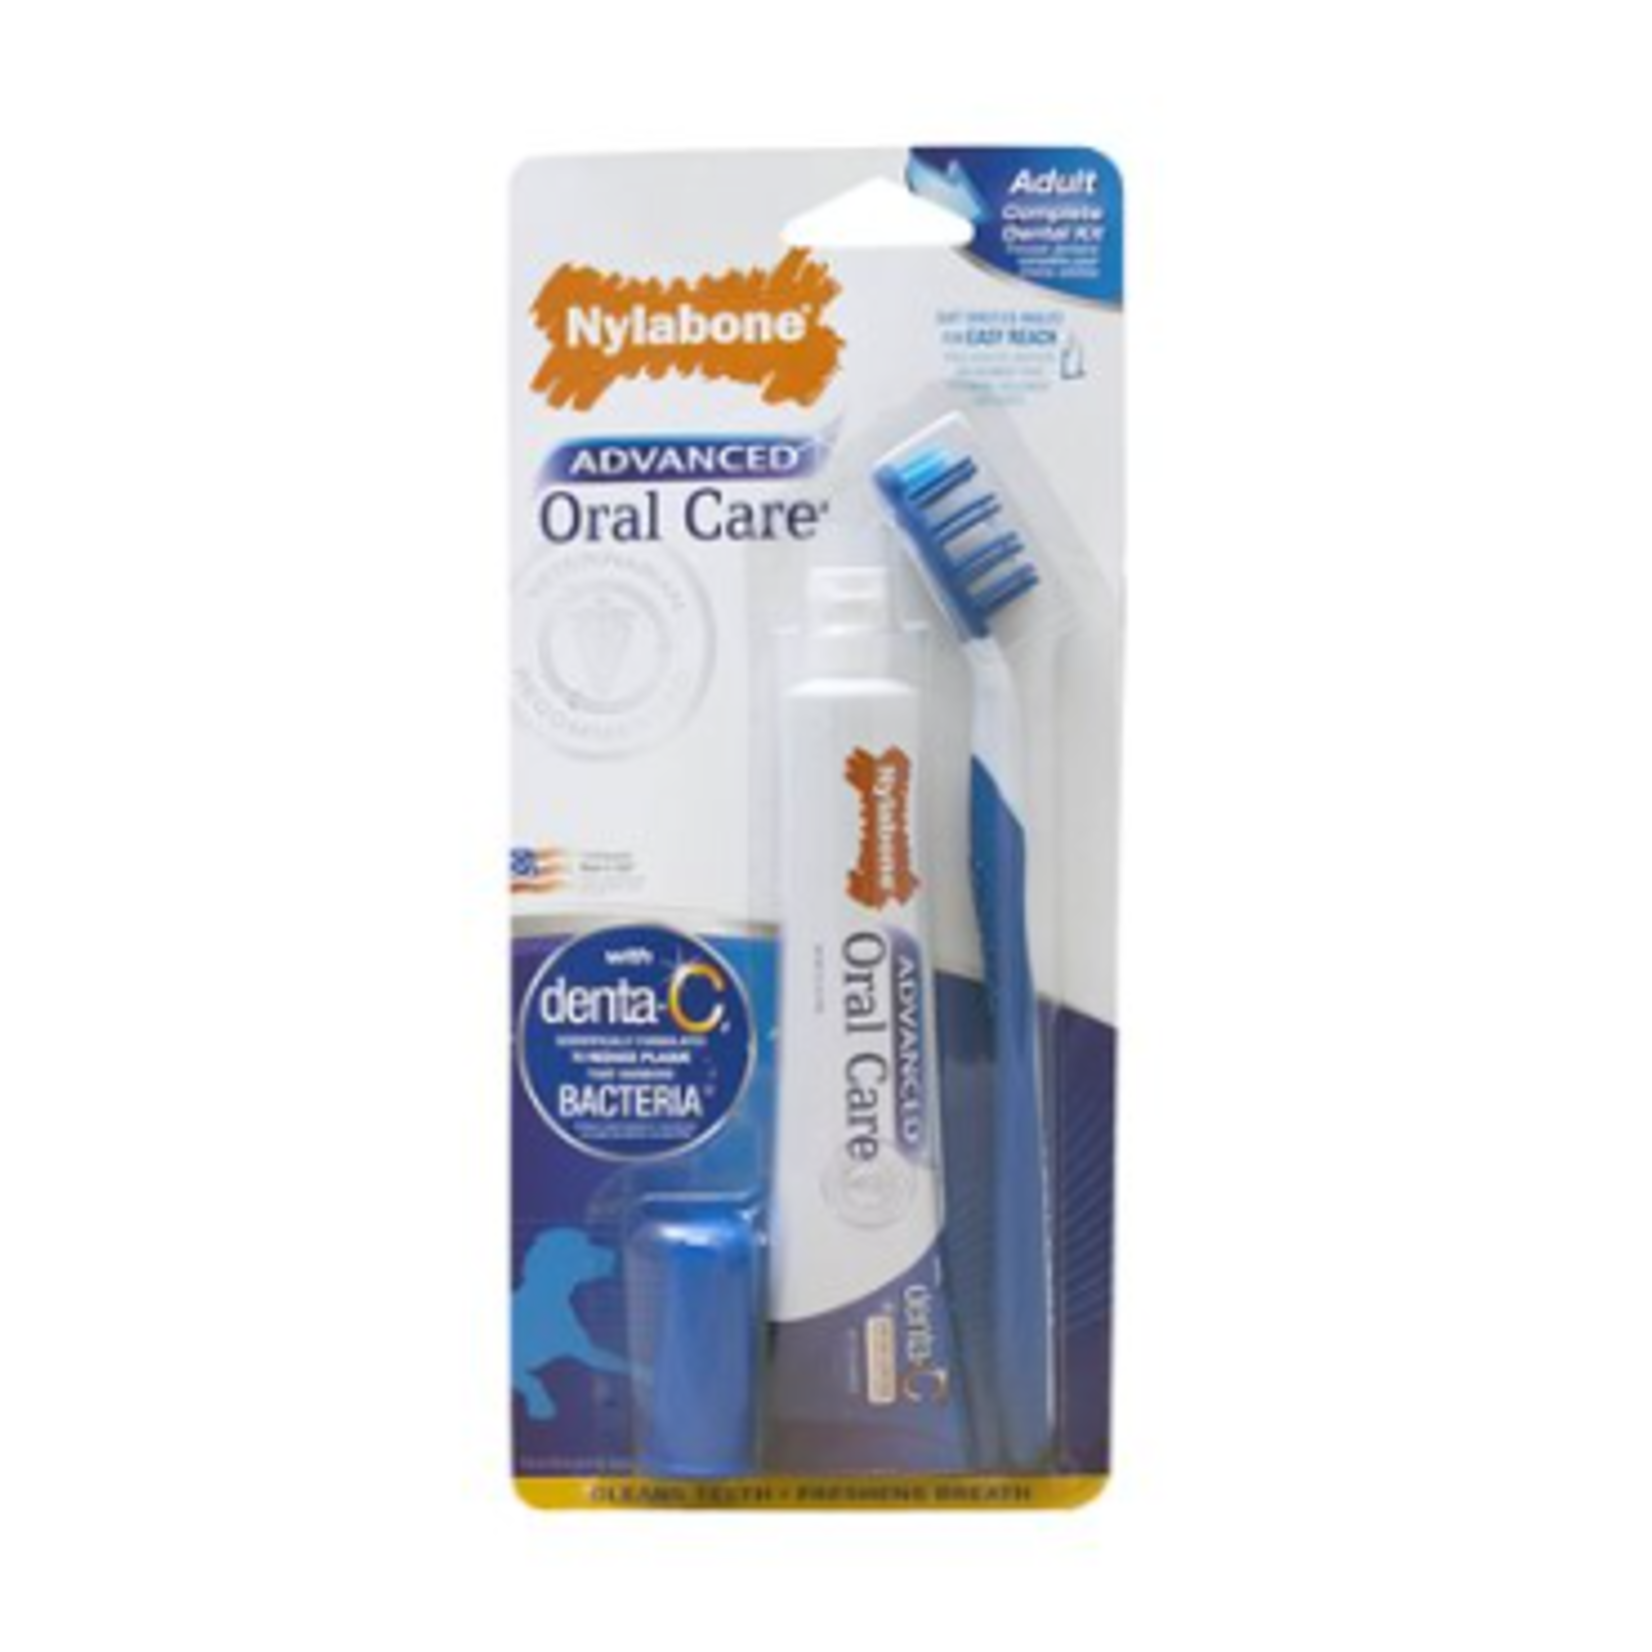 Nylabone Advanced Oral Care - Adult - Dog Dental Kit - Original flavor